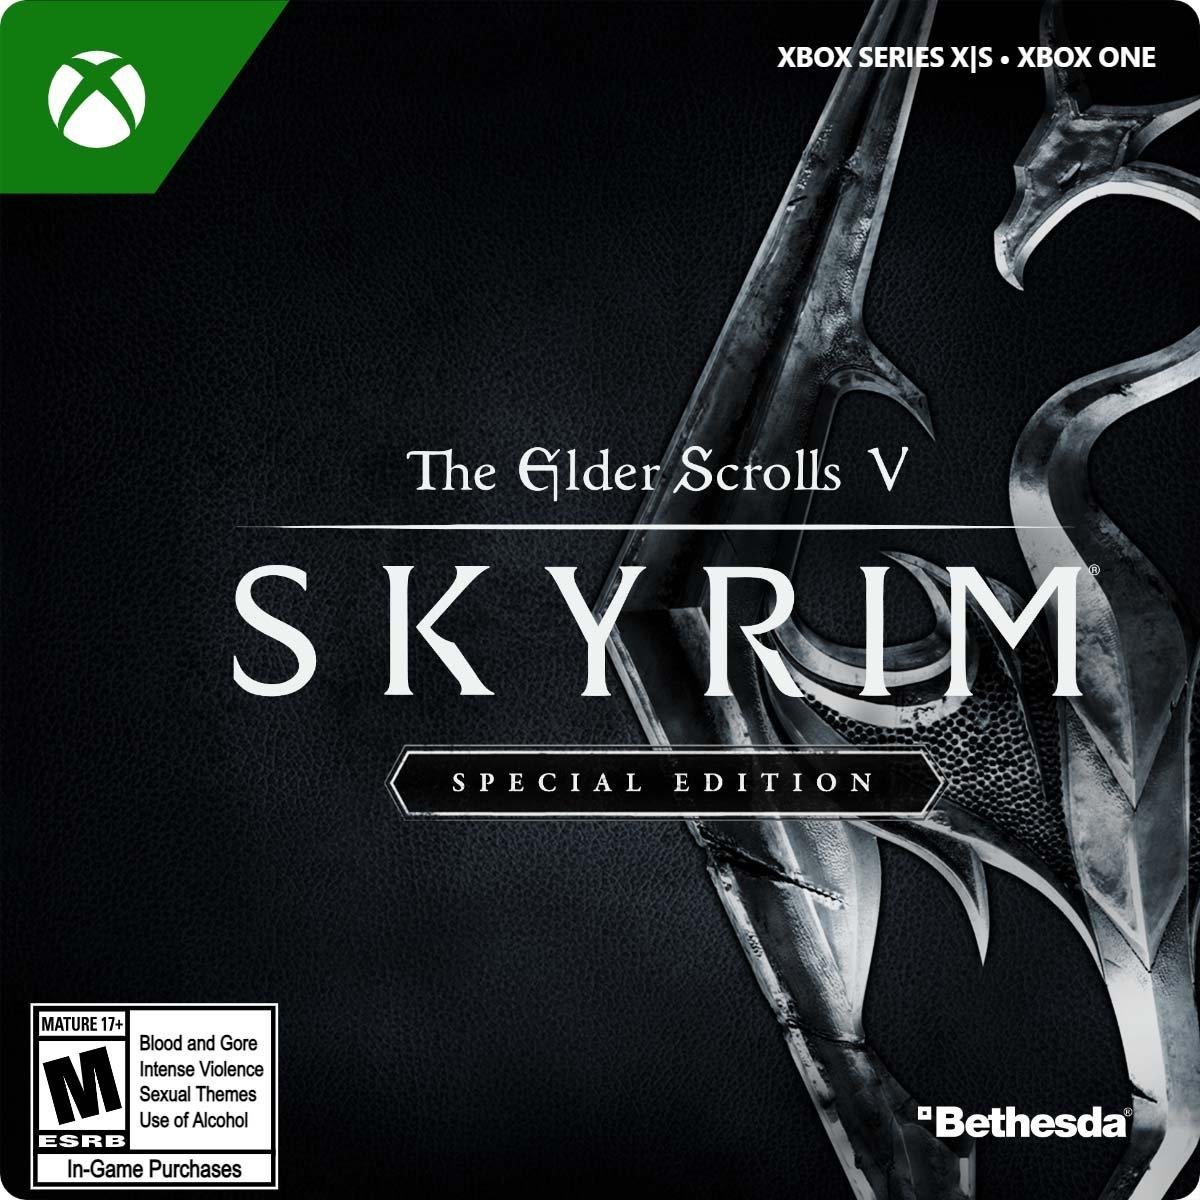 Aanpassen samen Stun The Elder Scrolls V: Skyrim Special Edition | Bethesda Softworks | GameStop